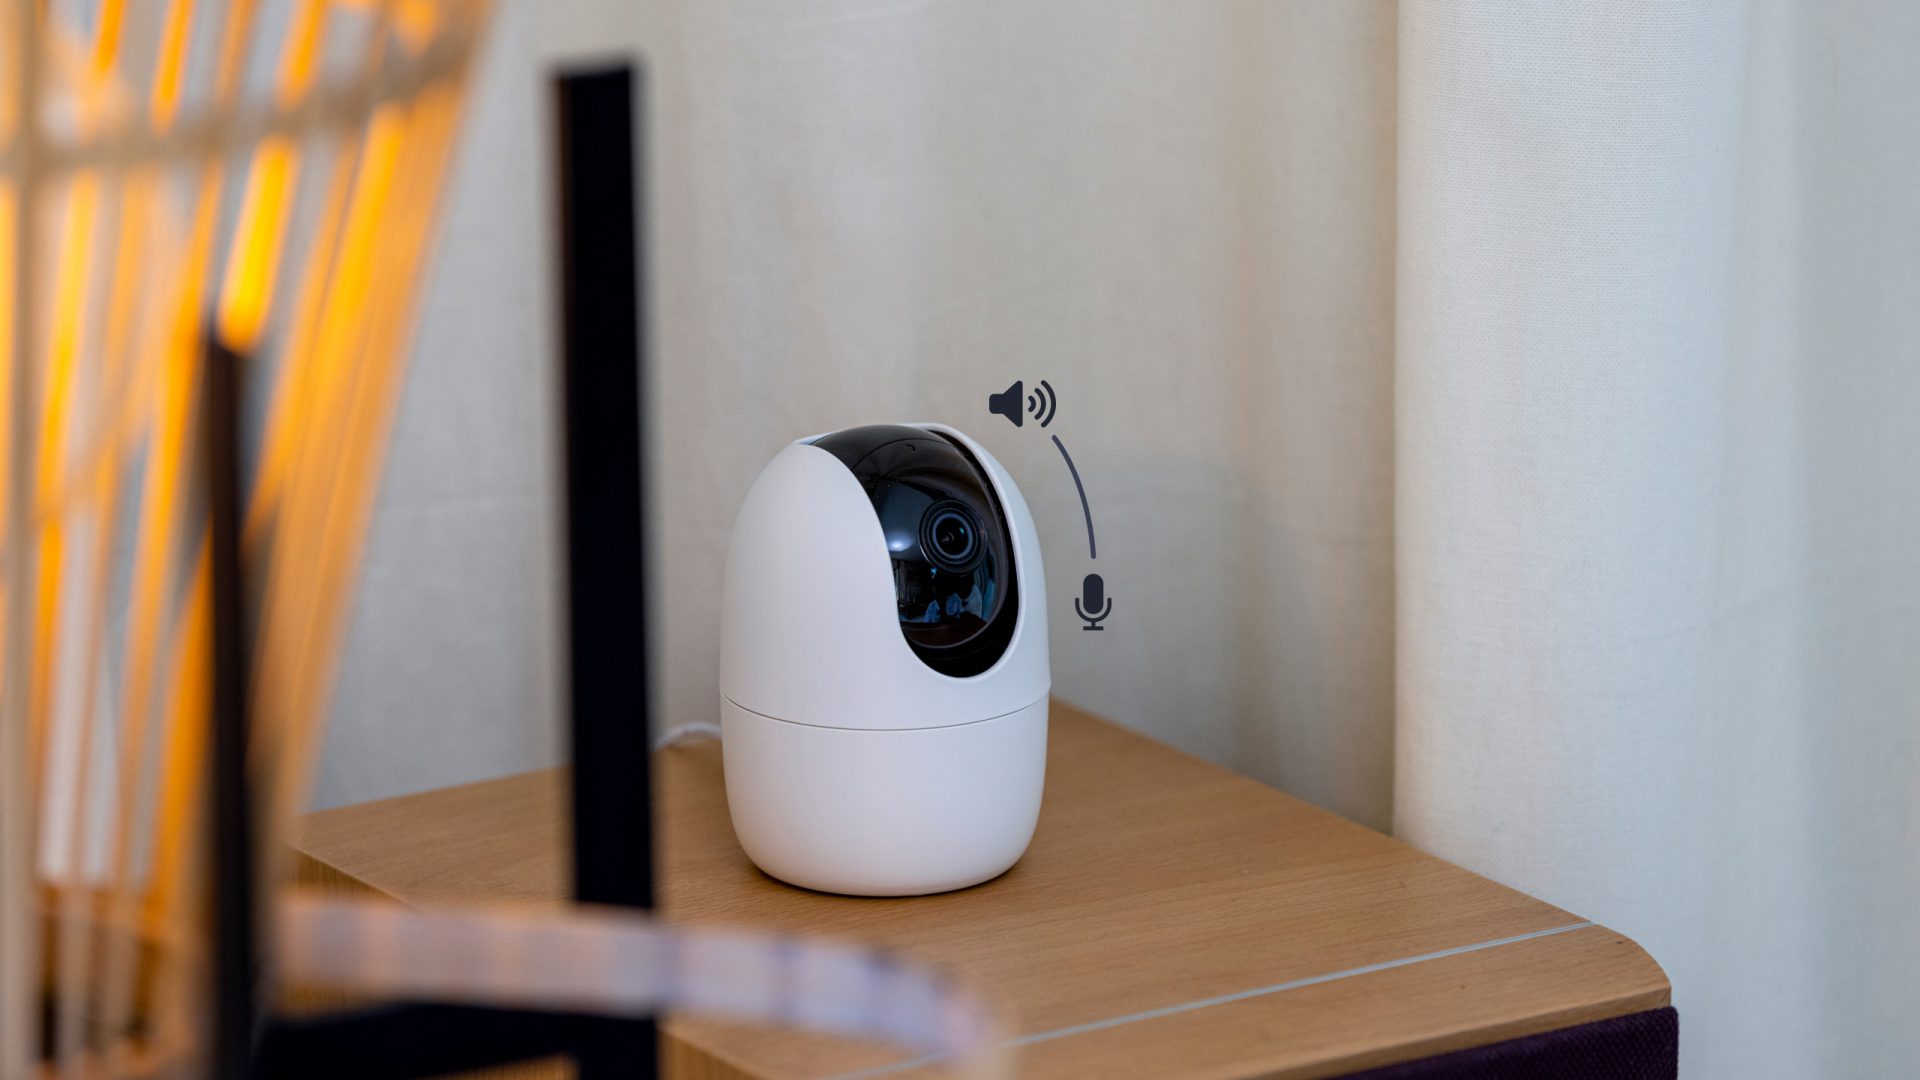 Installation caméra de surveillance exterieur - Entreprise de  vidéosurveillance